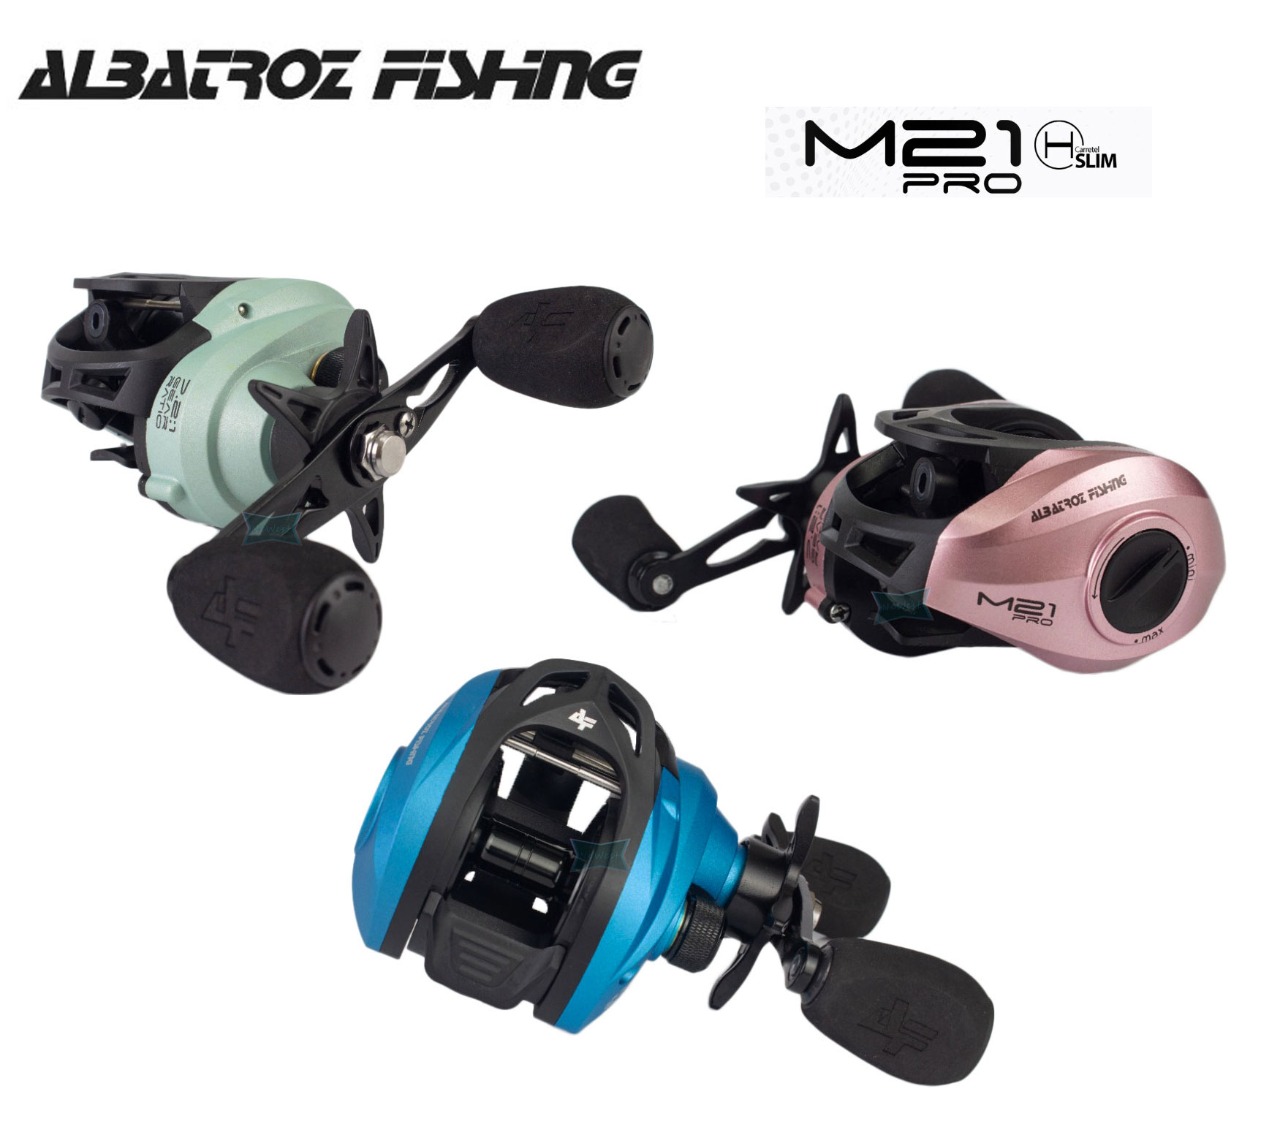 Carretilha M21 Slim Pro 6 rolamentos perfil baixo Albatroz - Newest Pesca